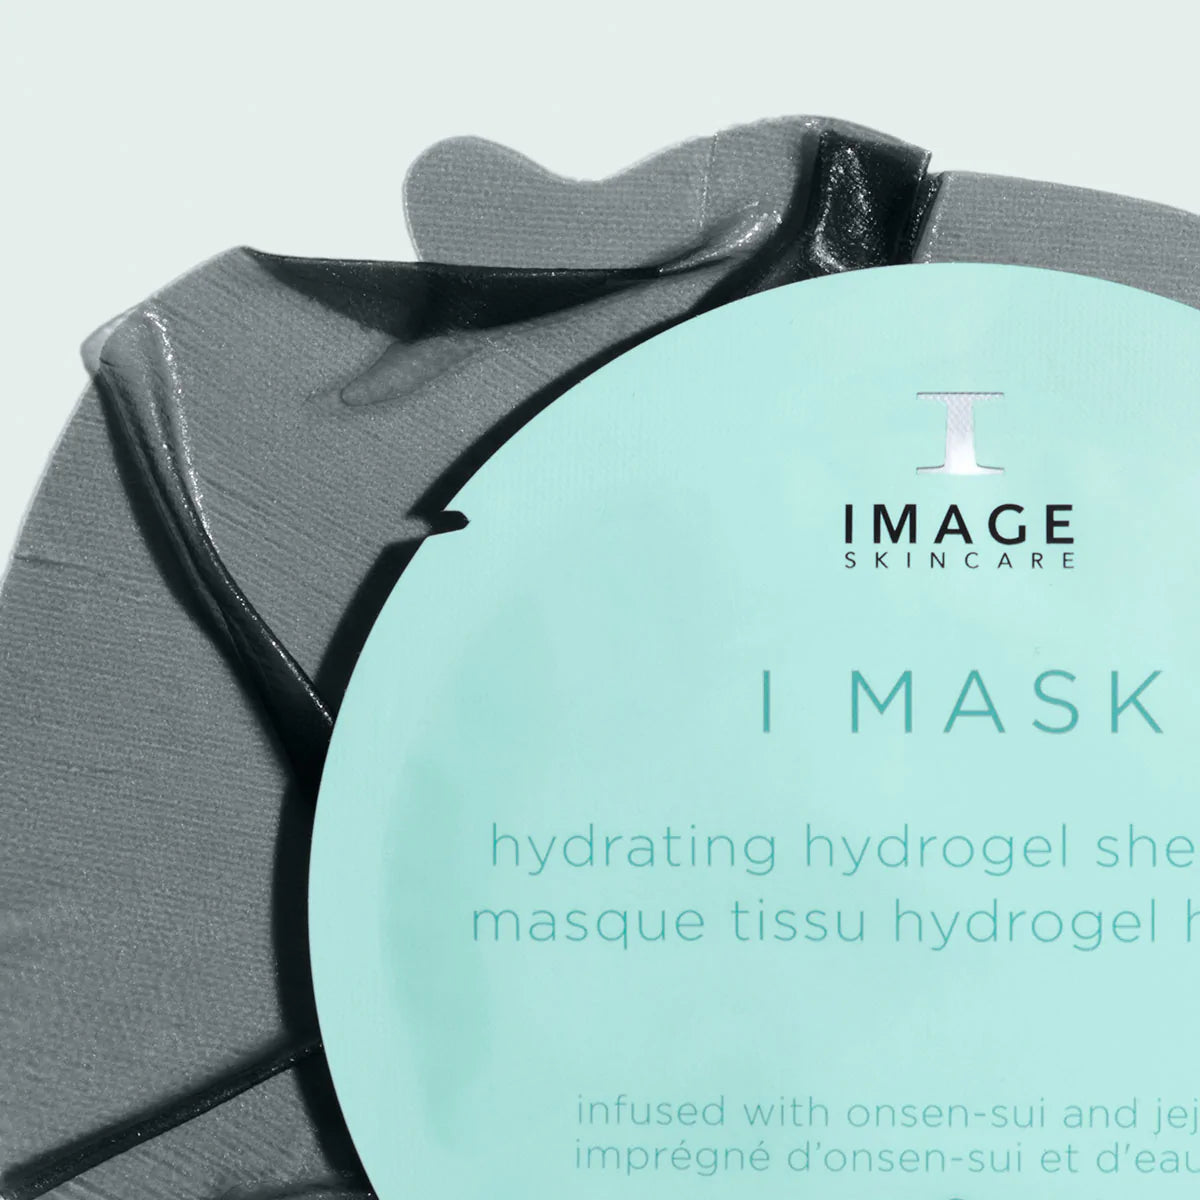 Image Skincare I MASK Hydrating Hydrogel Sheet Mask (5 pack)